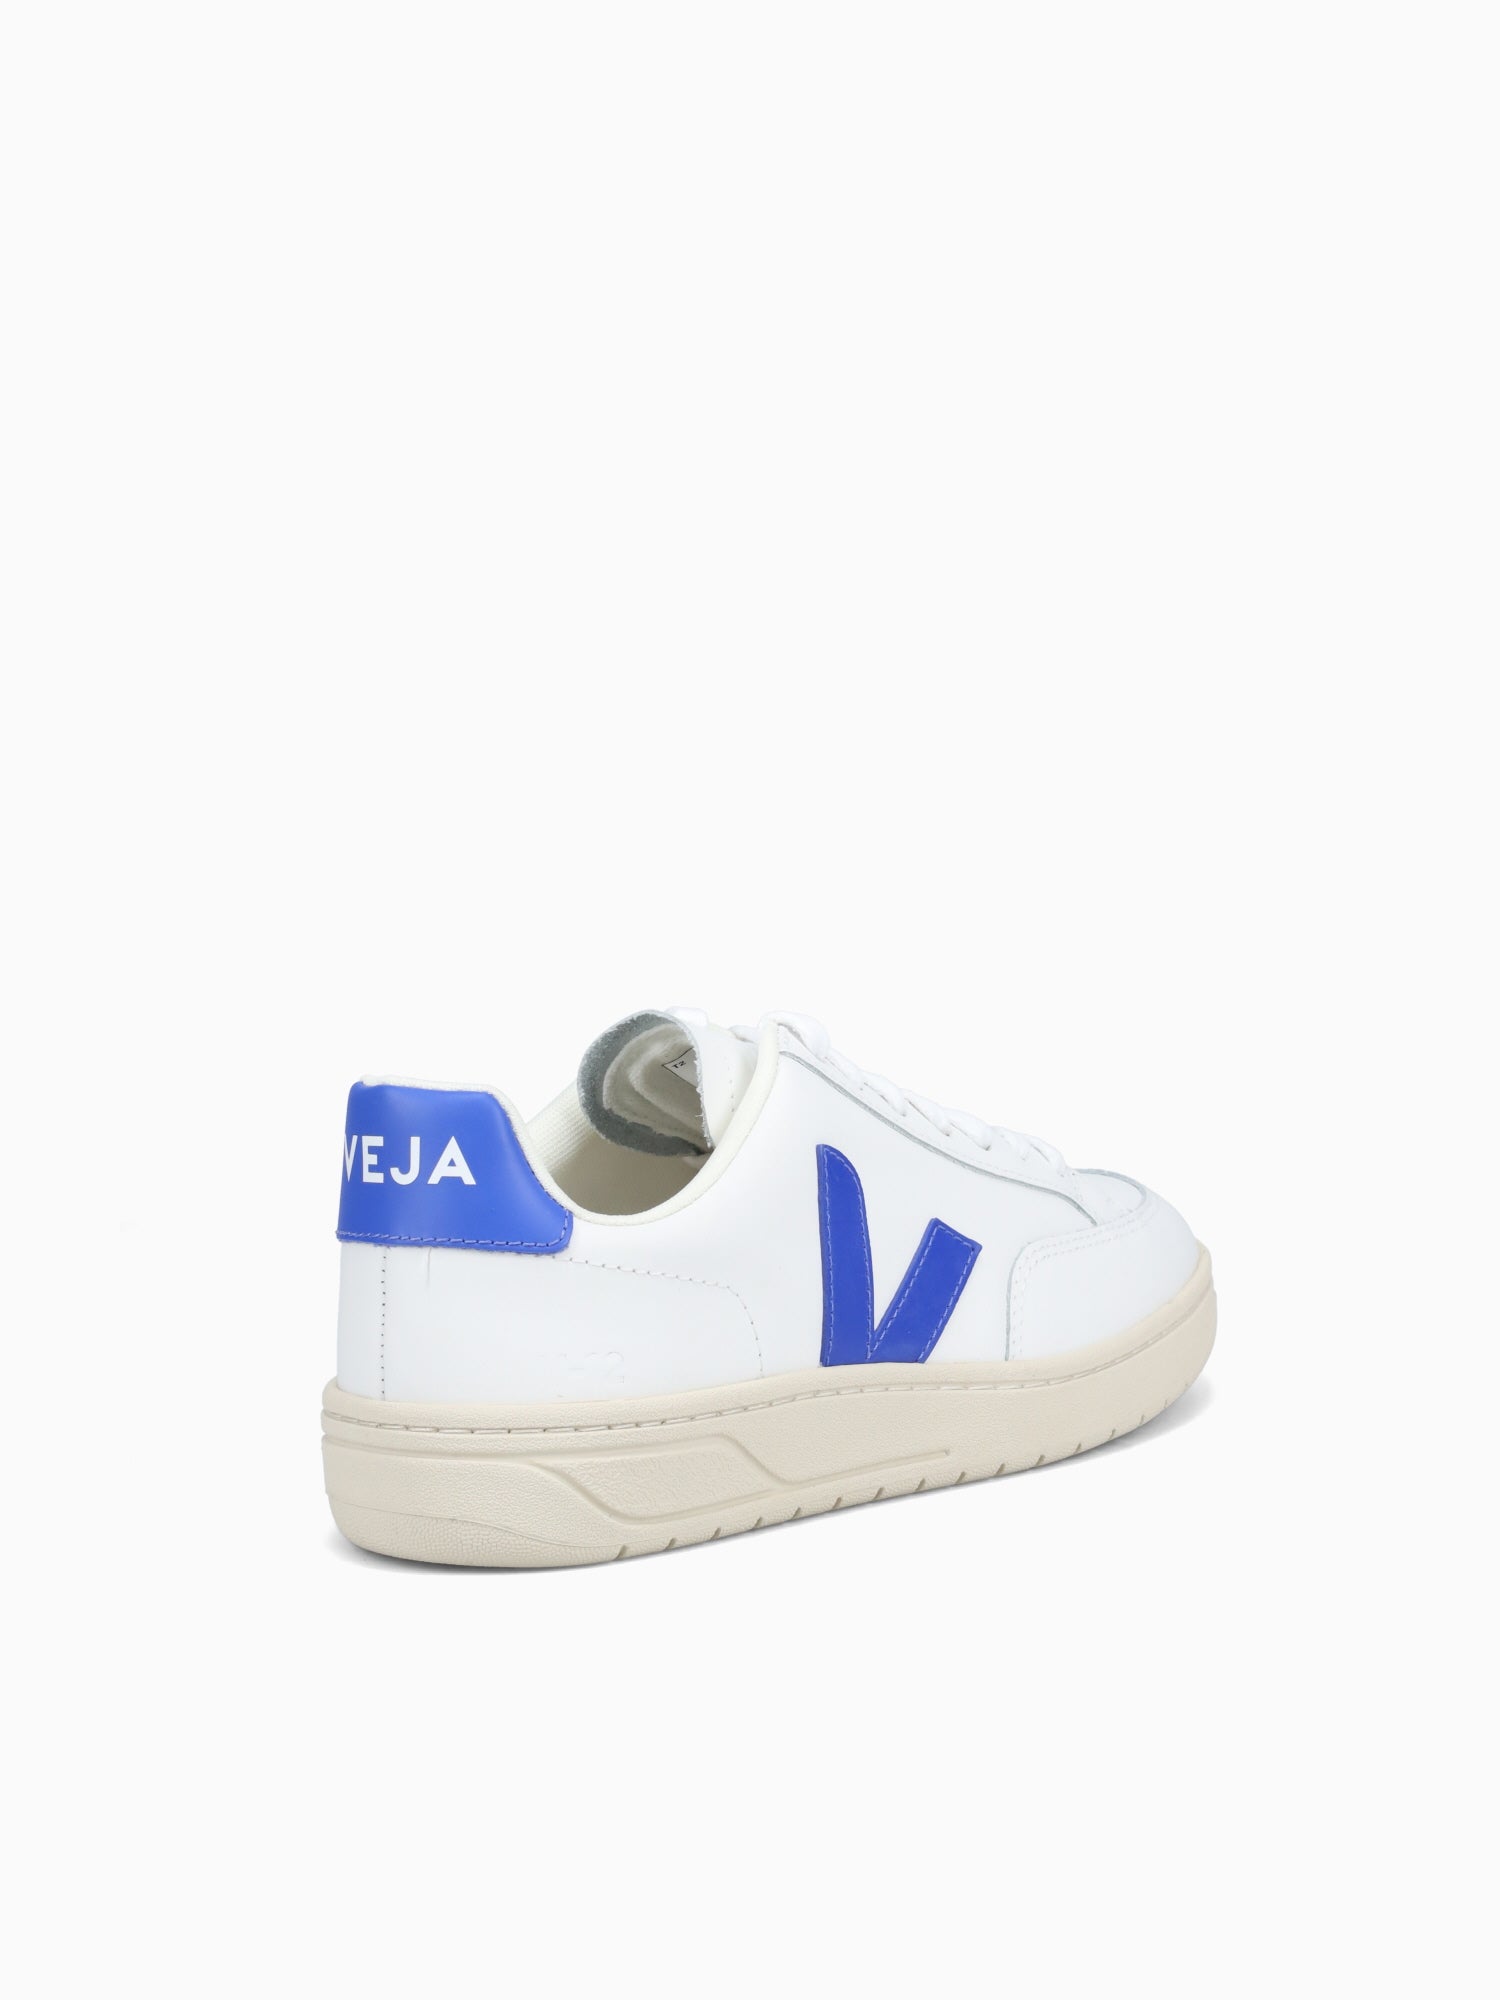 V12– Novus Shoes